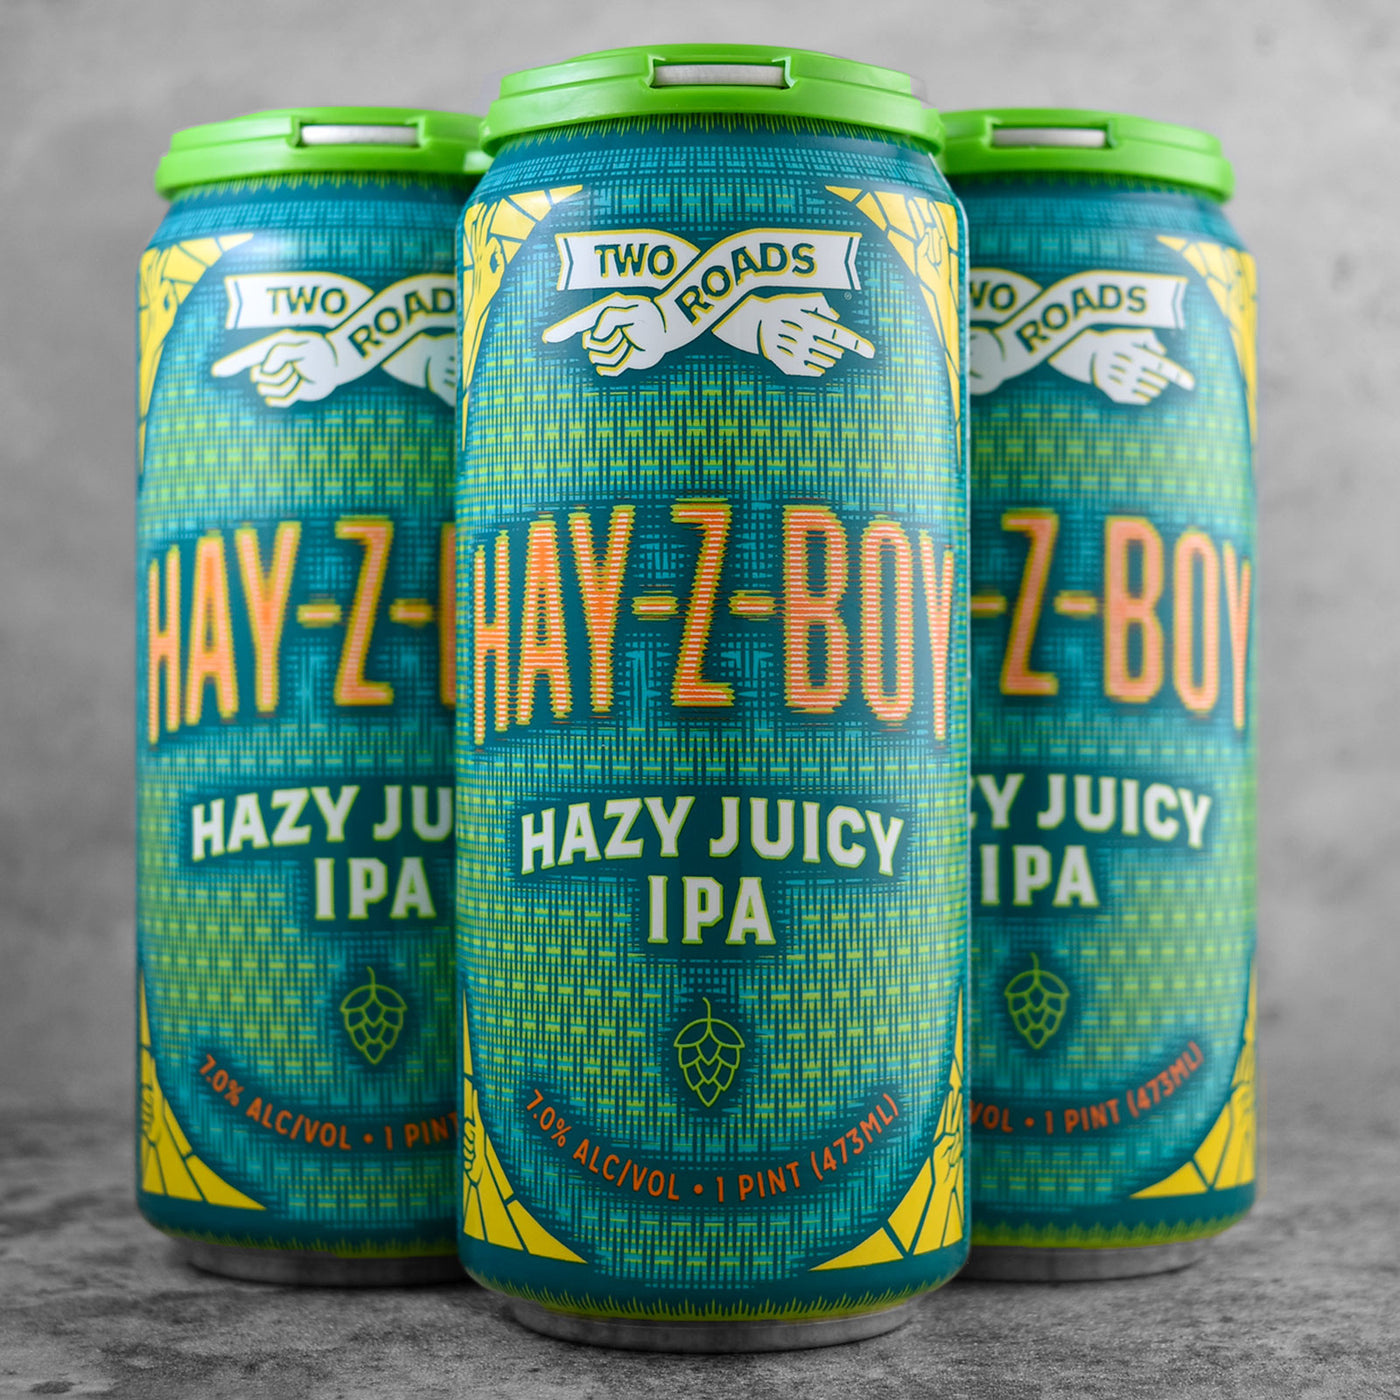 Two Roads Hay-Z-Boy